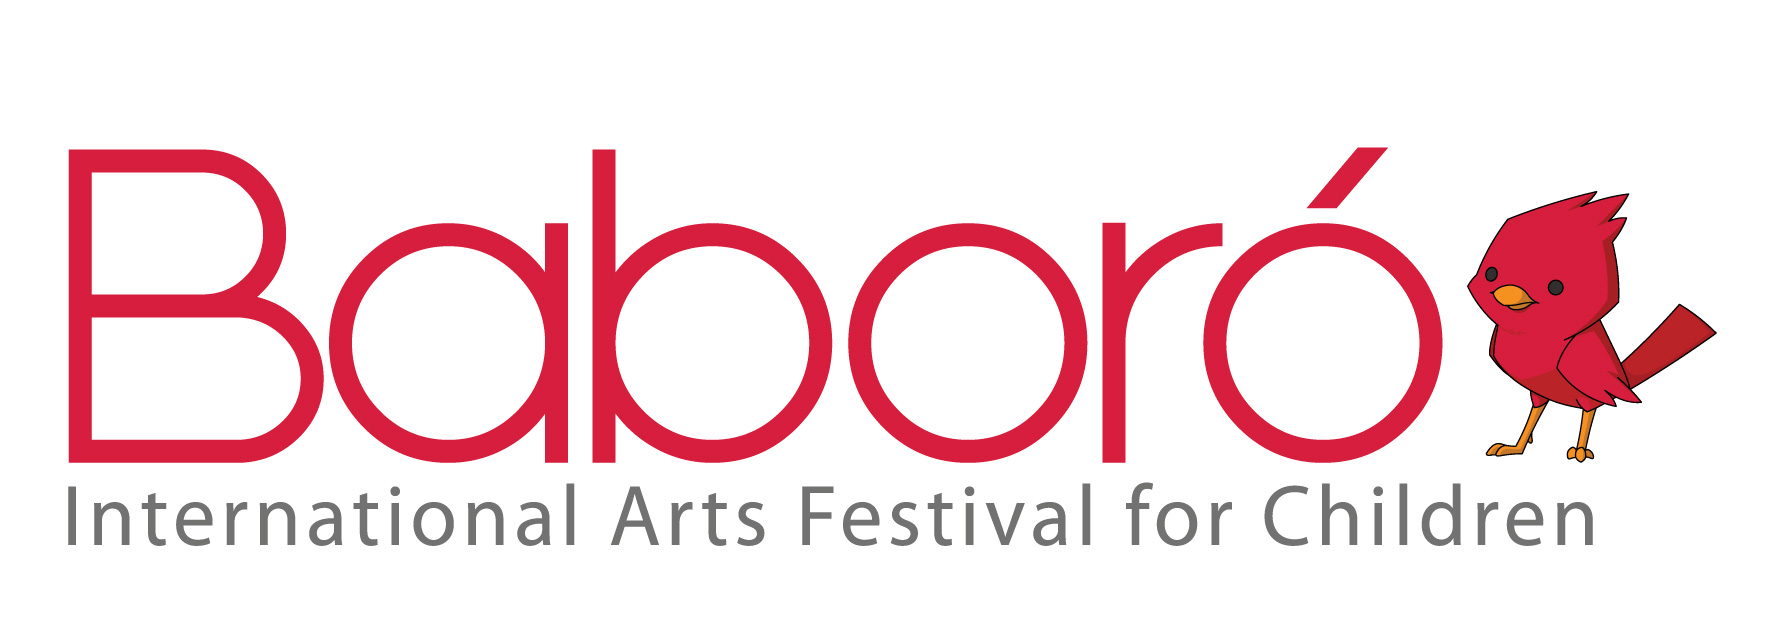 Baboró International Arts Festival for Children